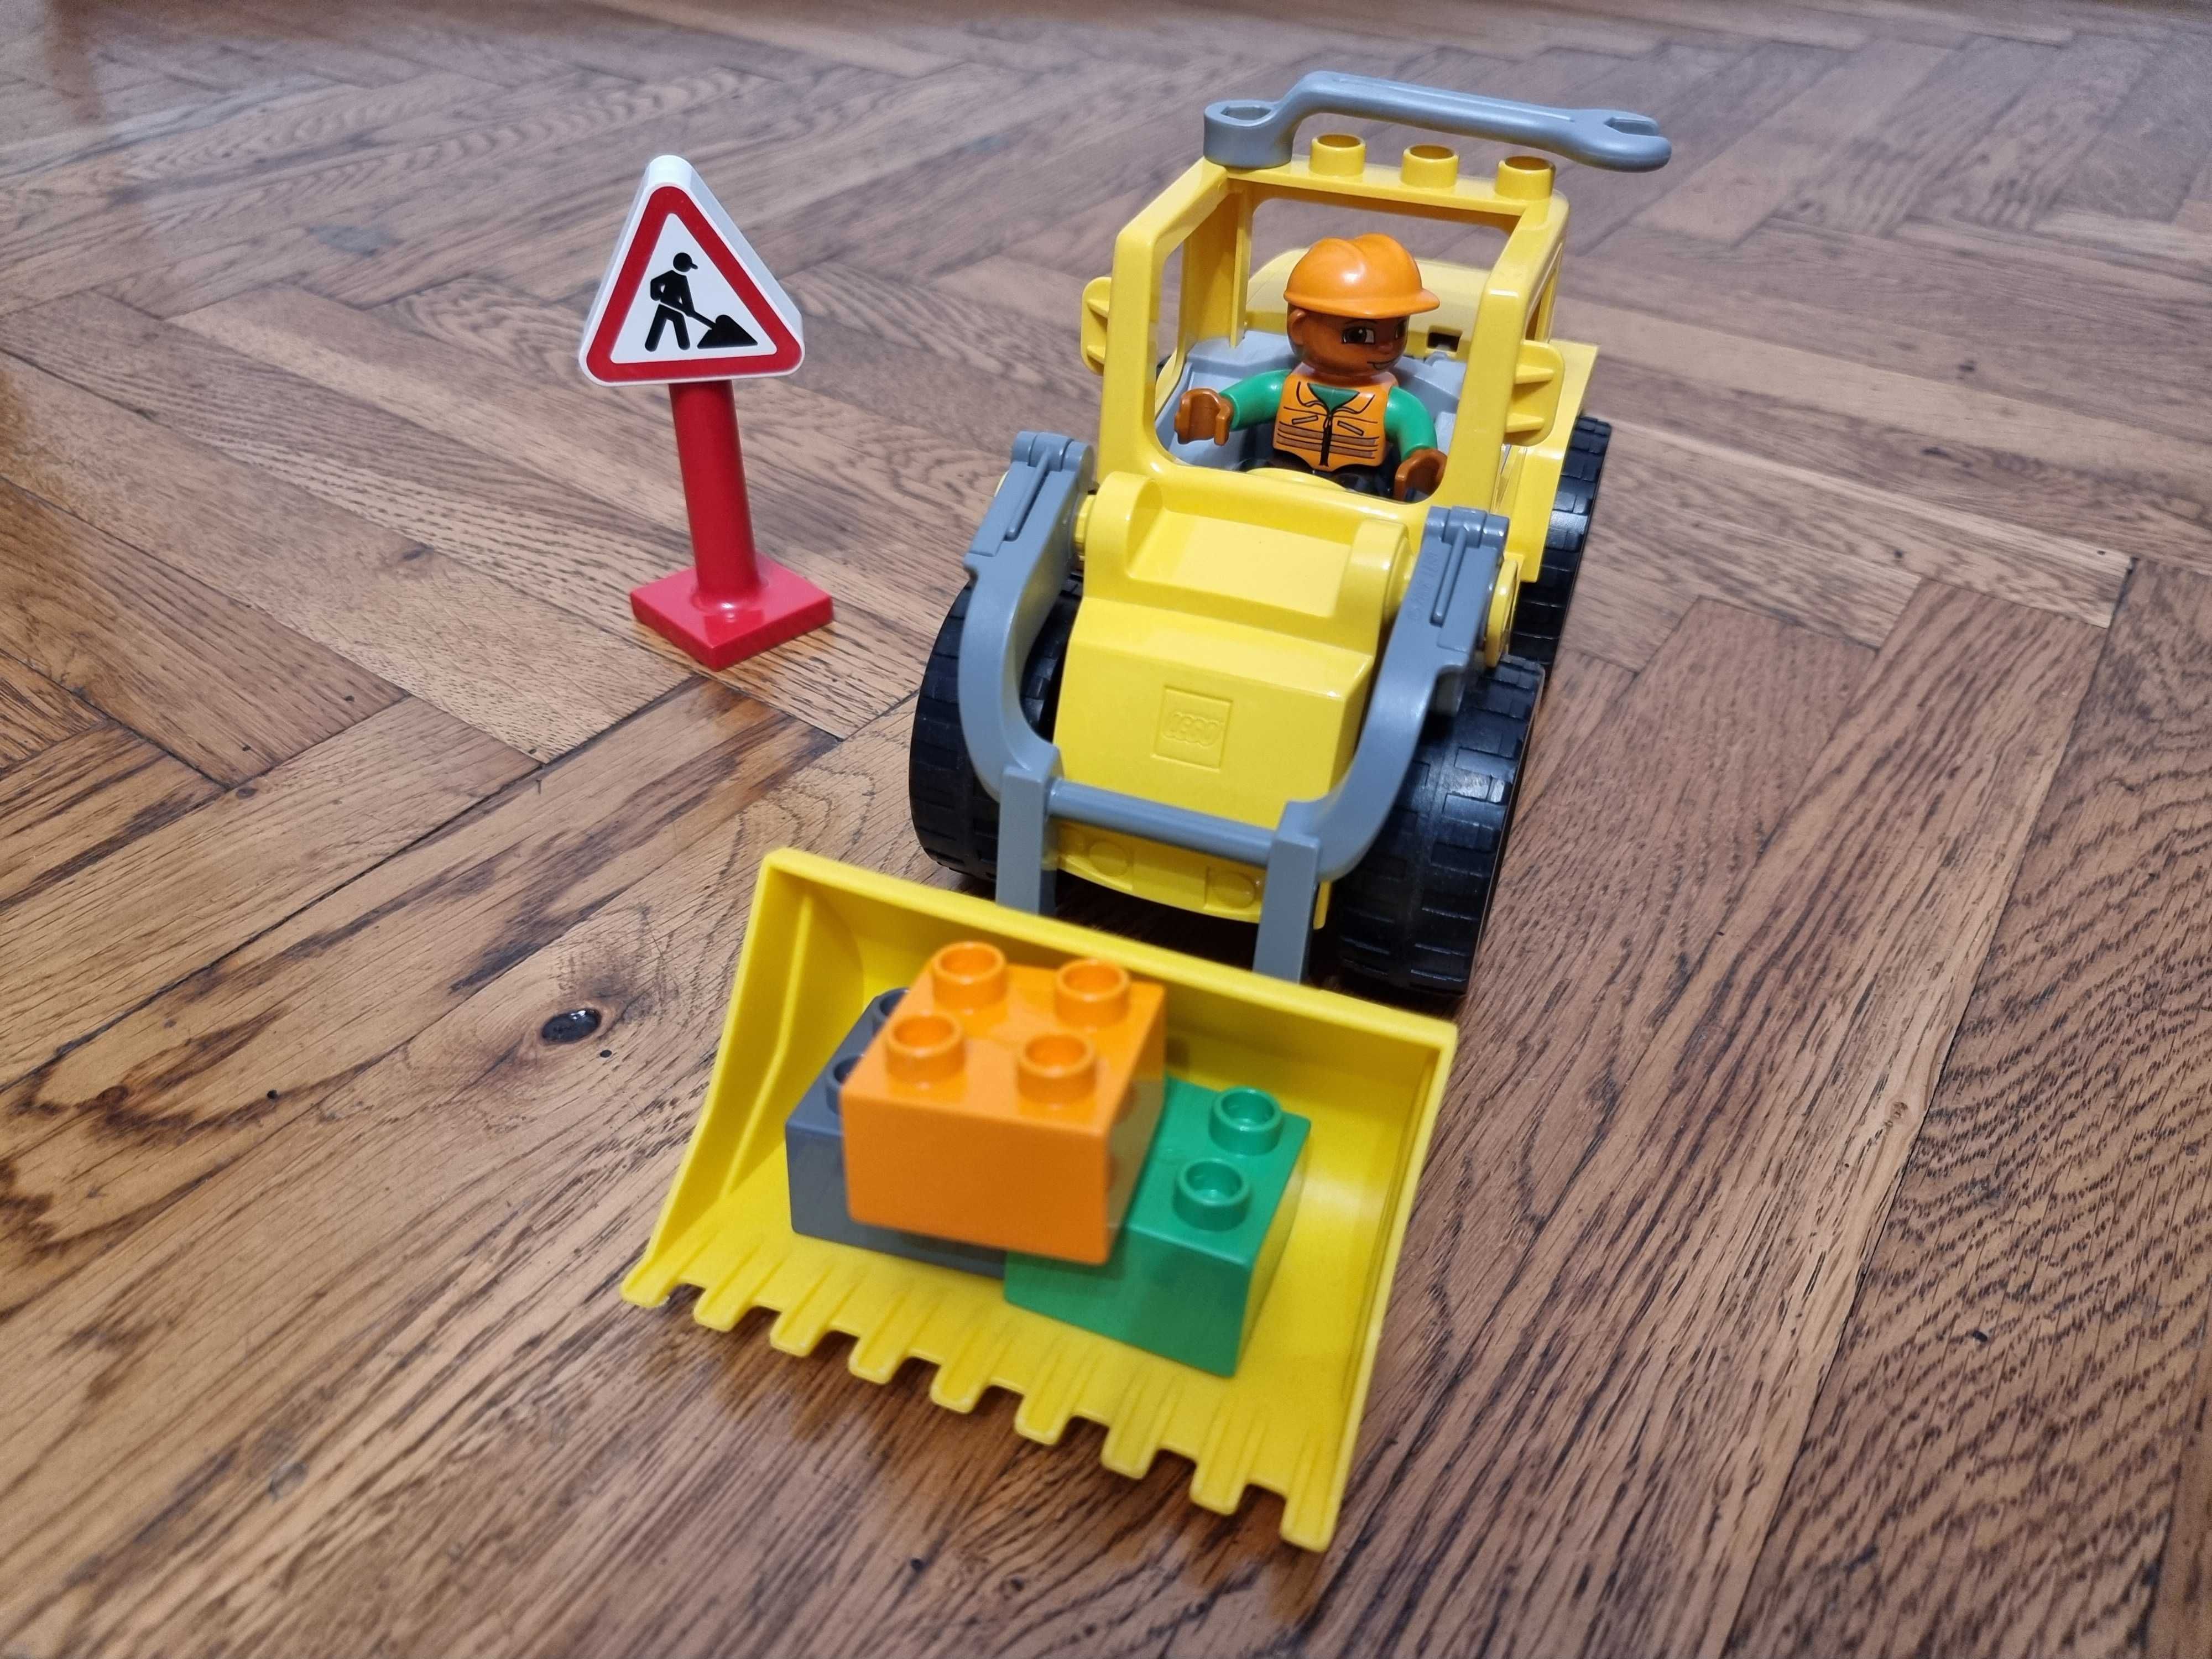 Lego Duplo 10520 Excavator si accesorii constructii